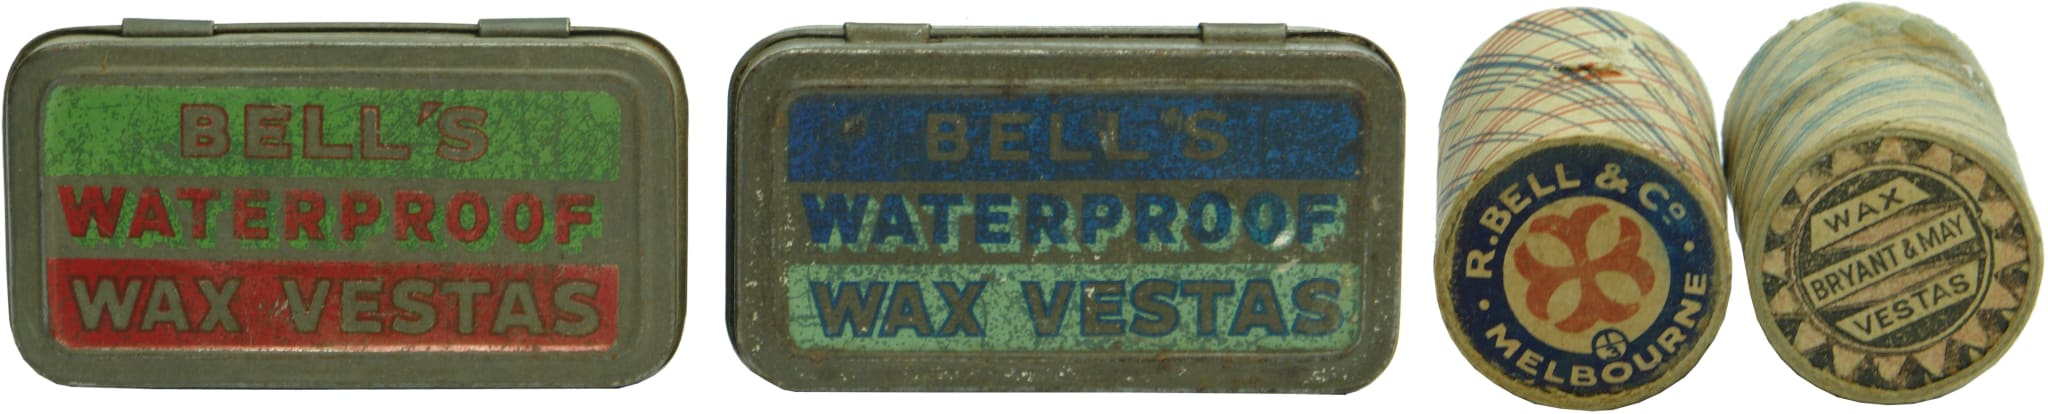 Vesta Match Boxes Antique